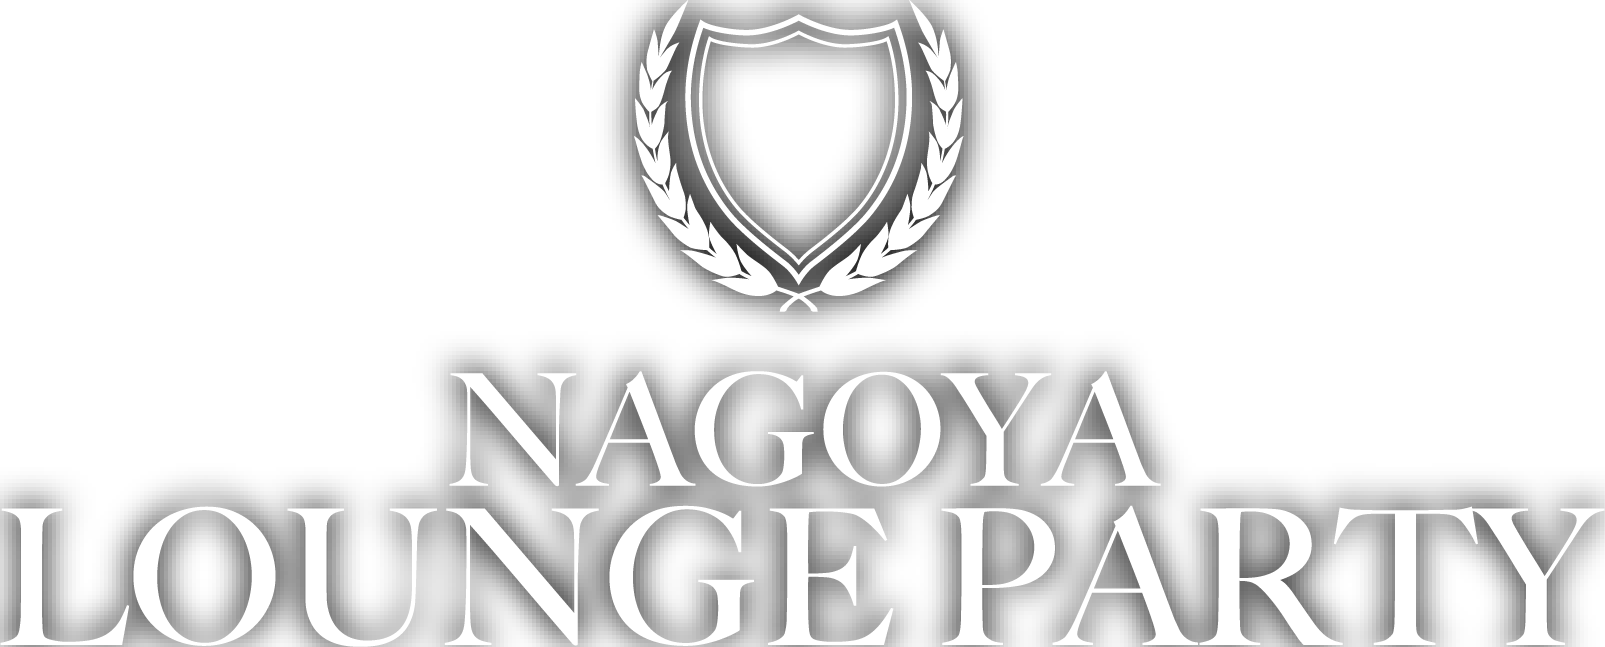 NAGOYA LOUNGE PARTY